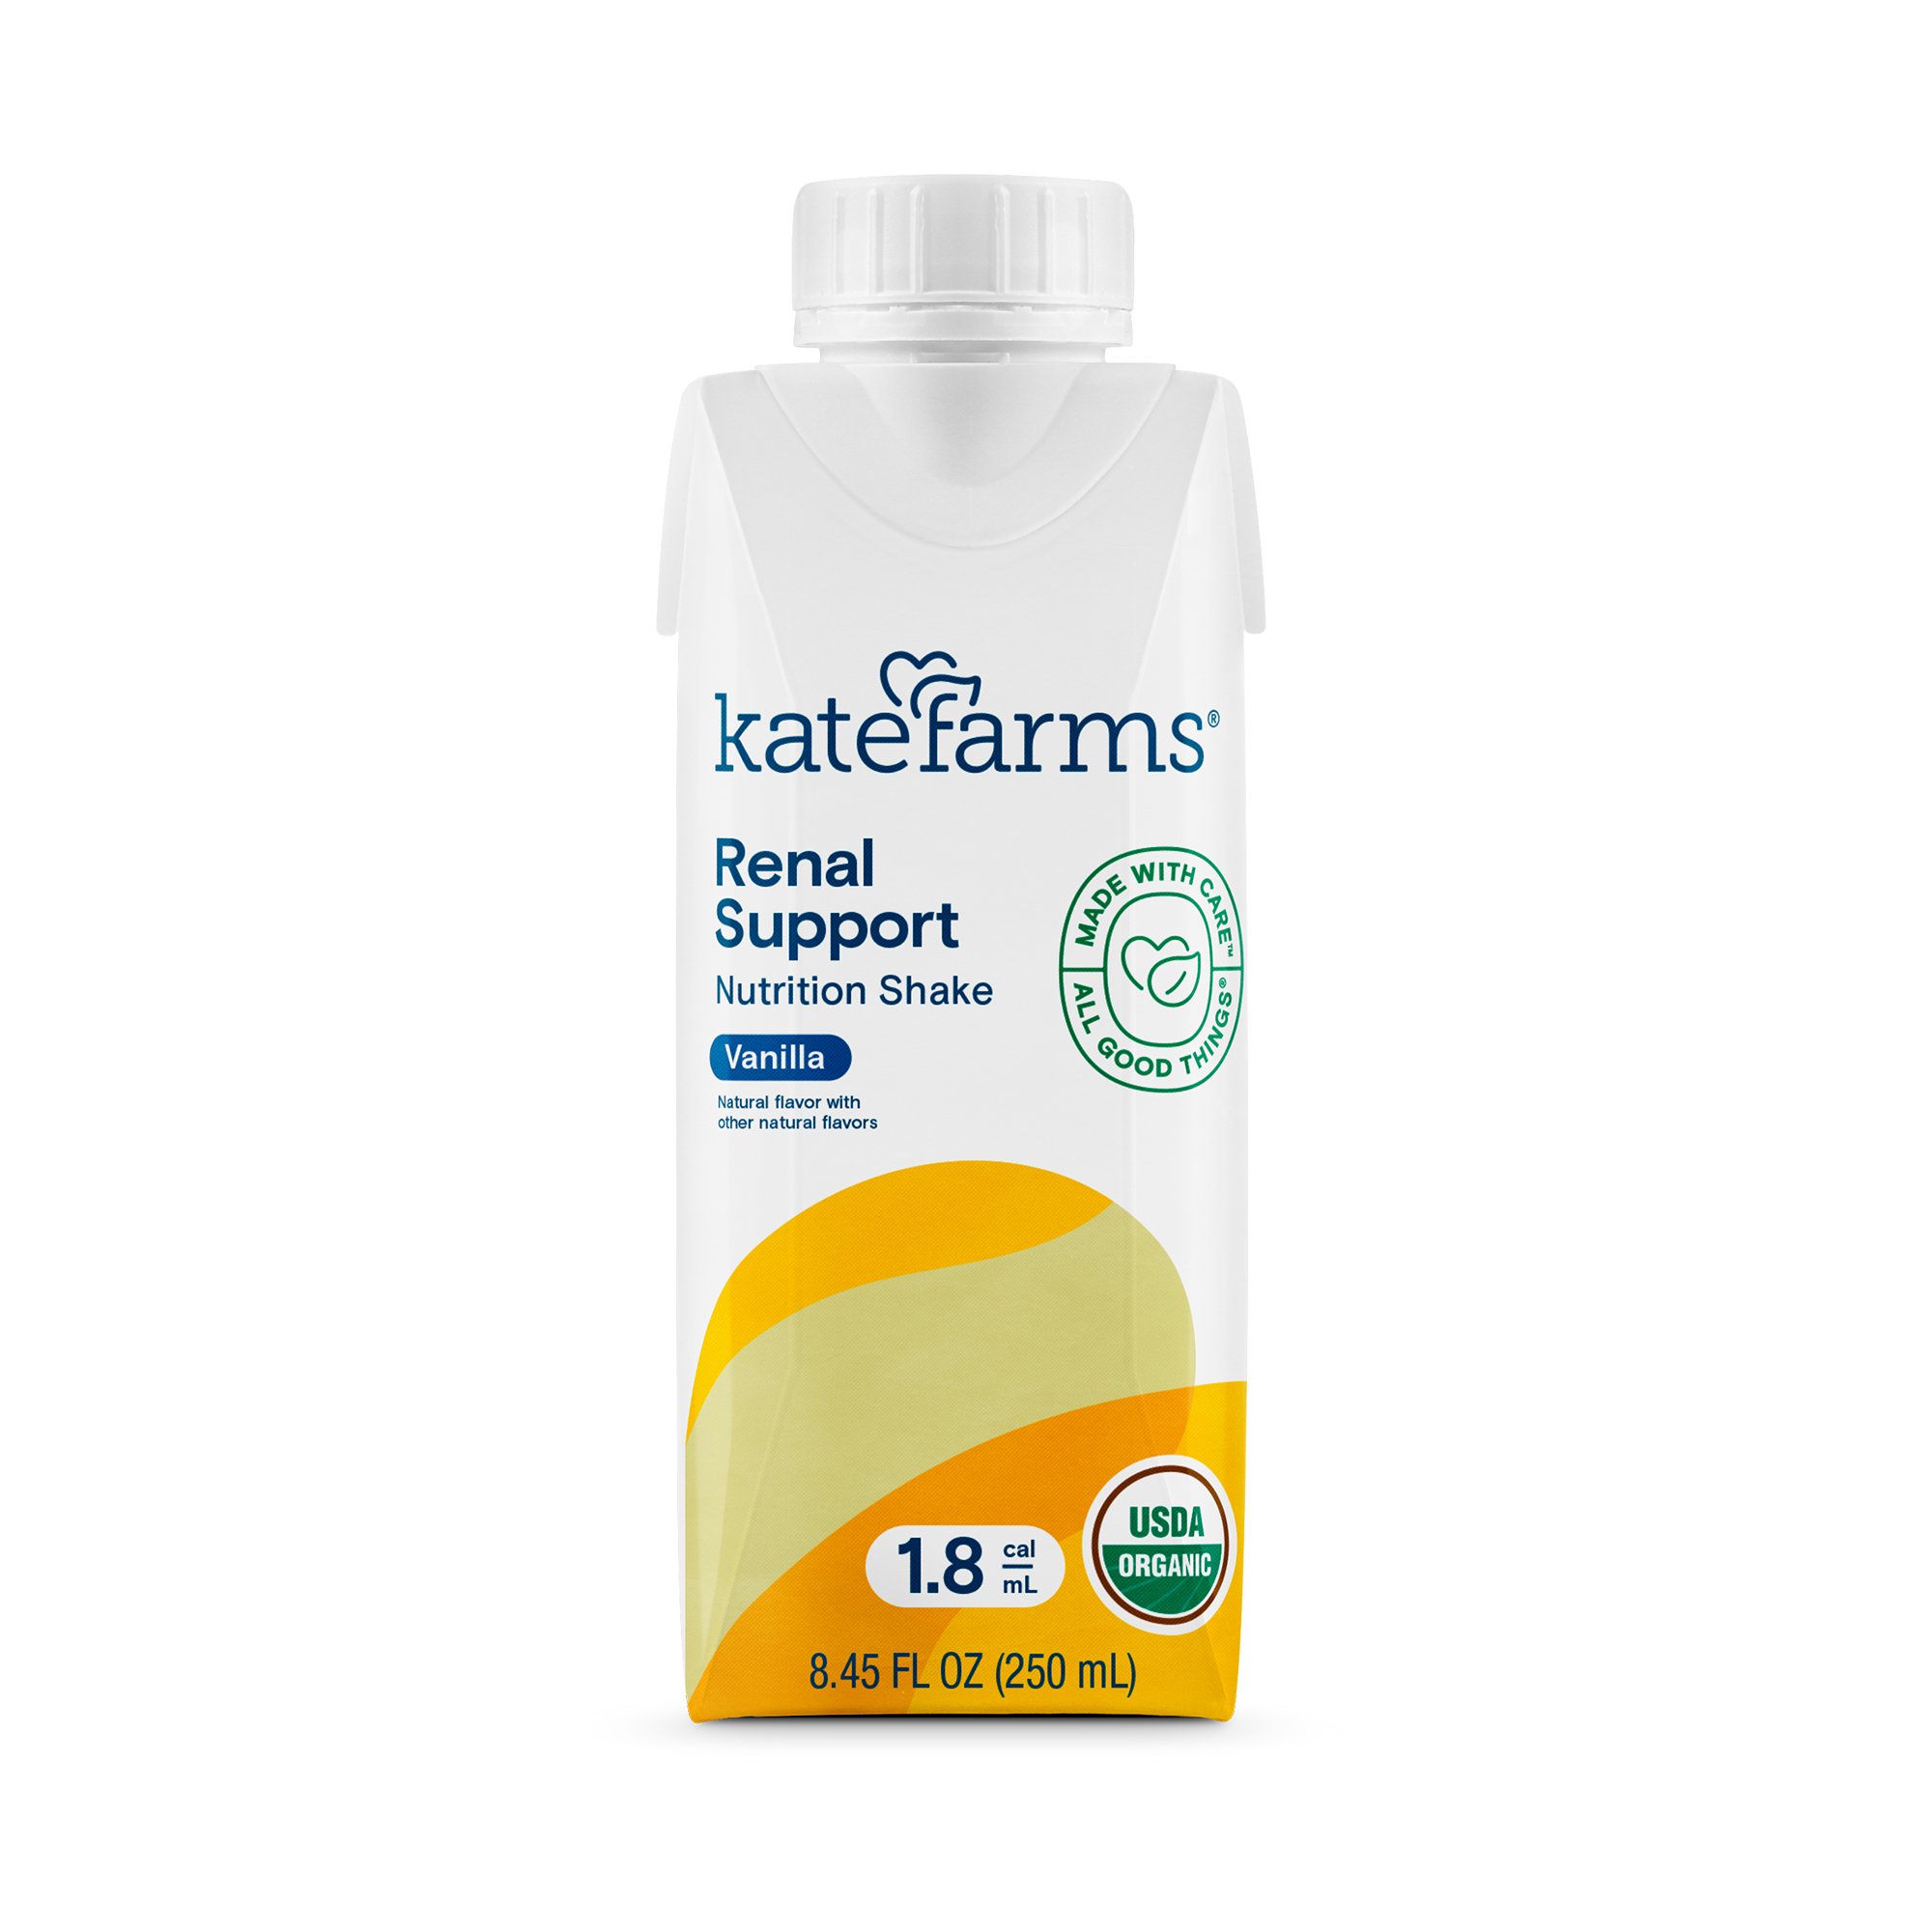 Kate Farms Renal Support 1.8 Vanilla Nutrition Shake, 8.45-ounce carton MK 1184938